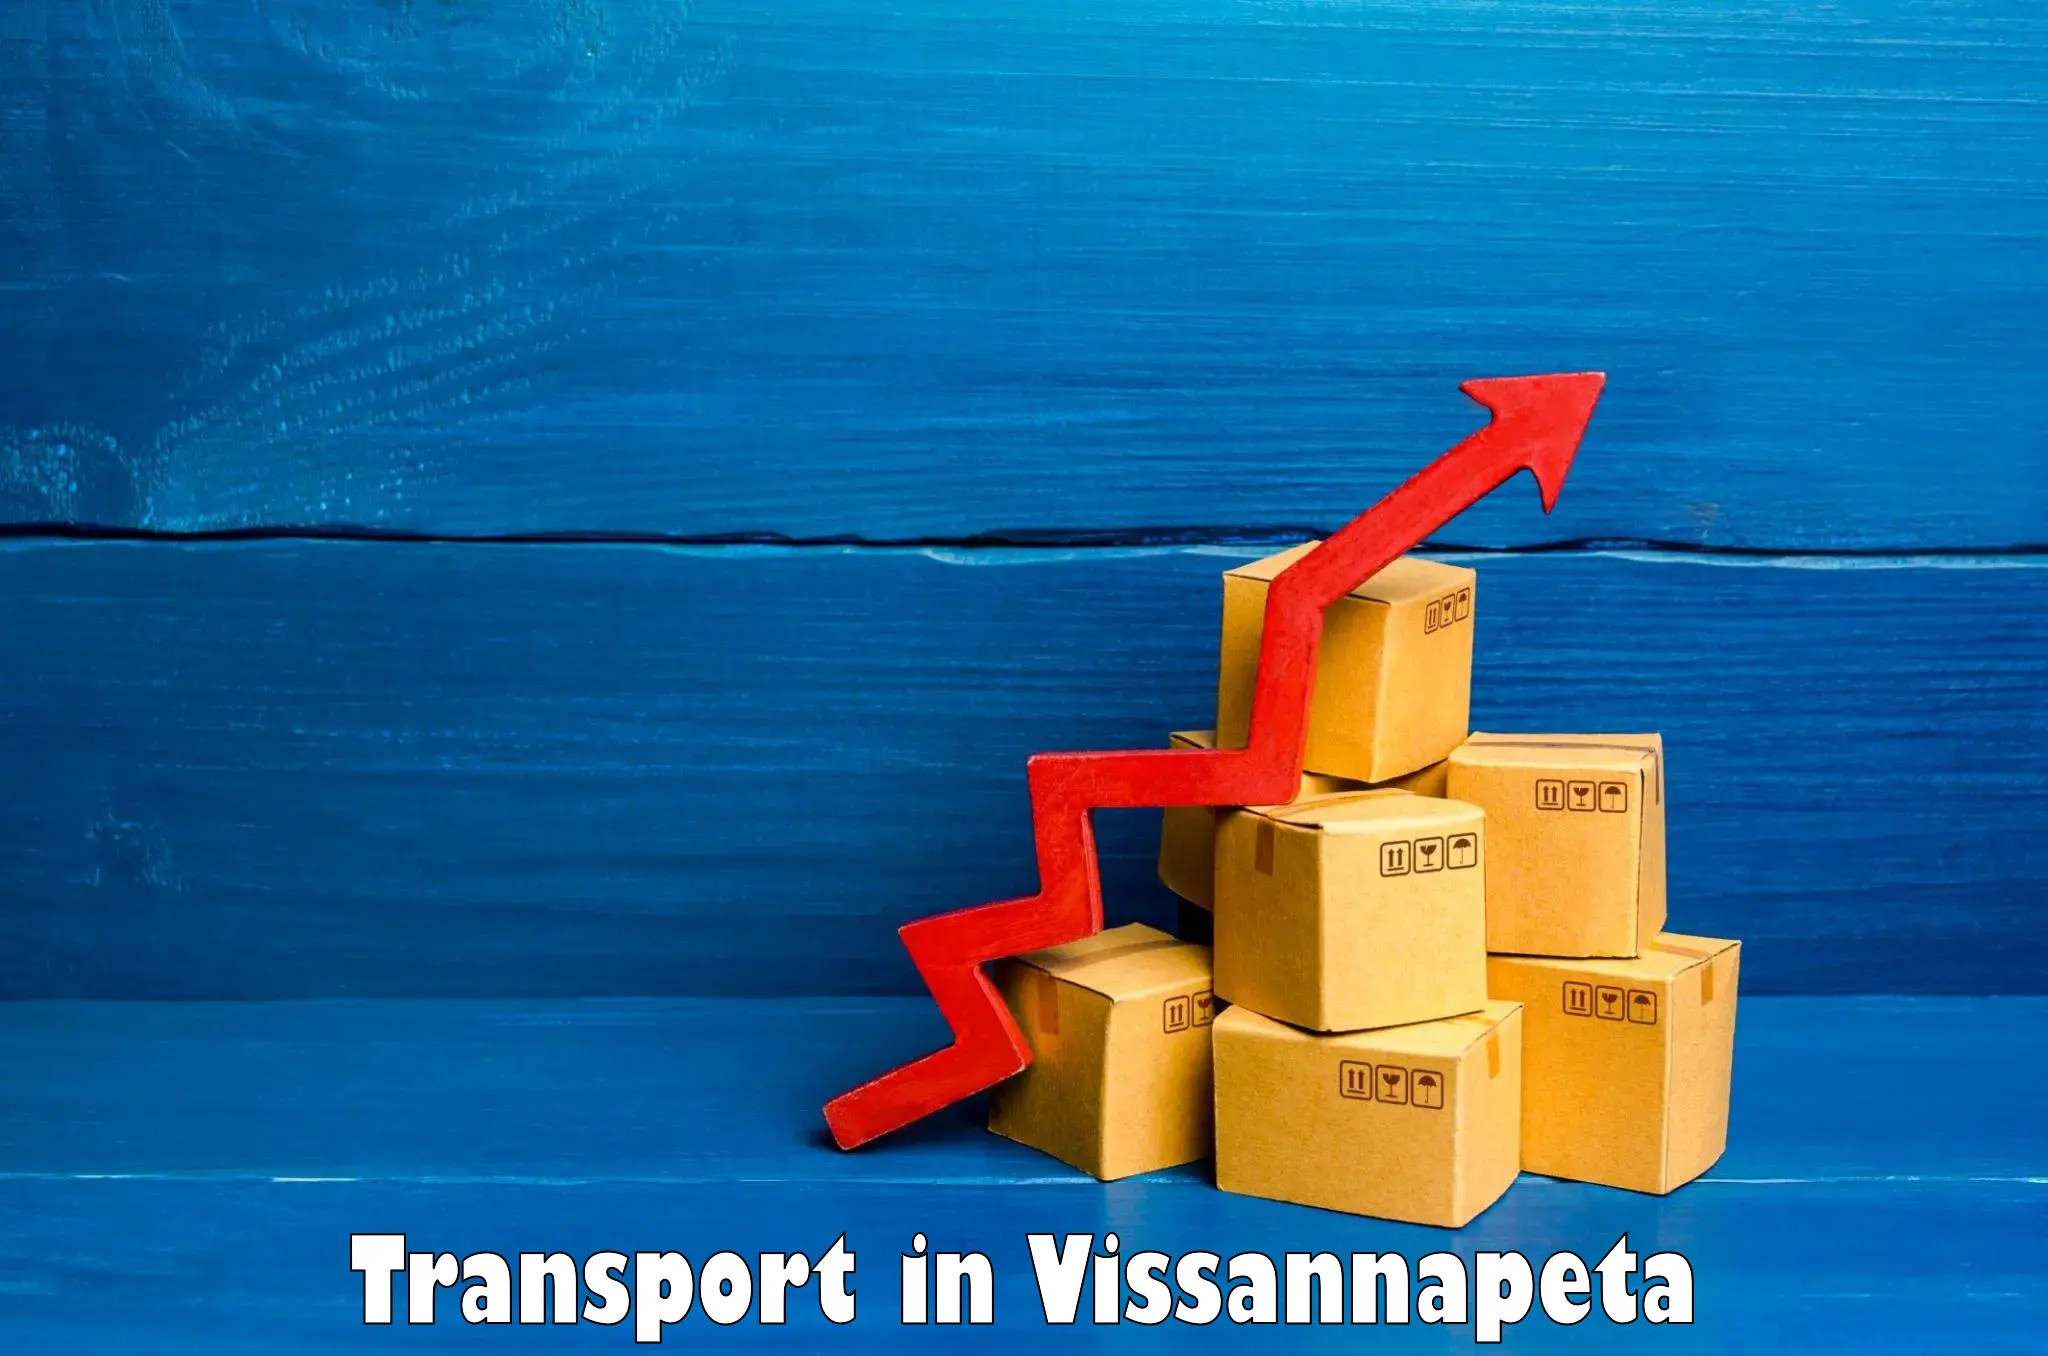 Intercity transport in Vissannapeta